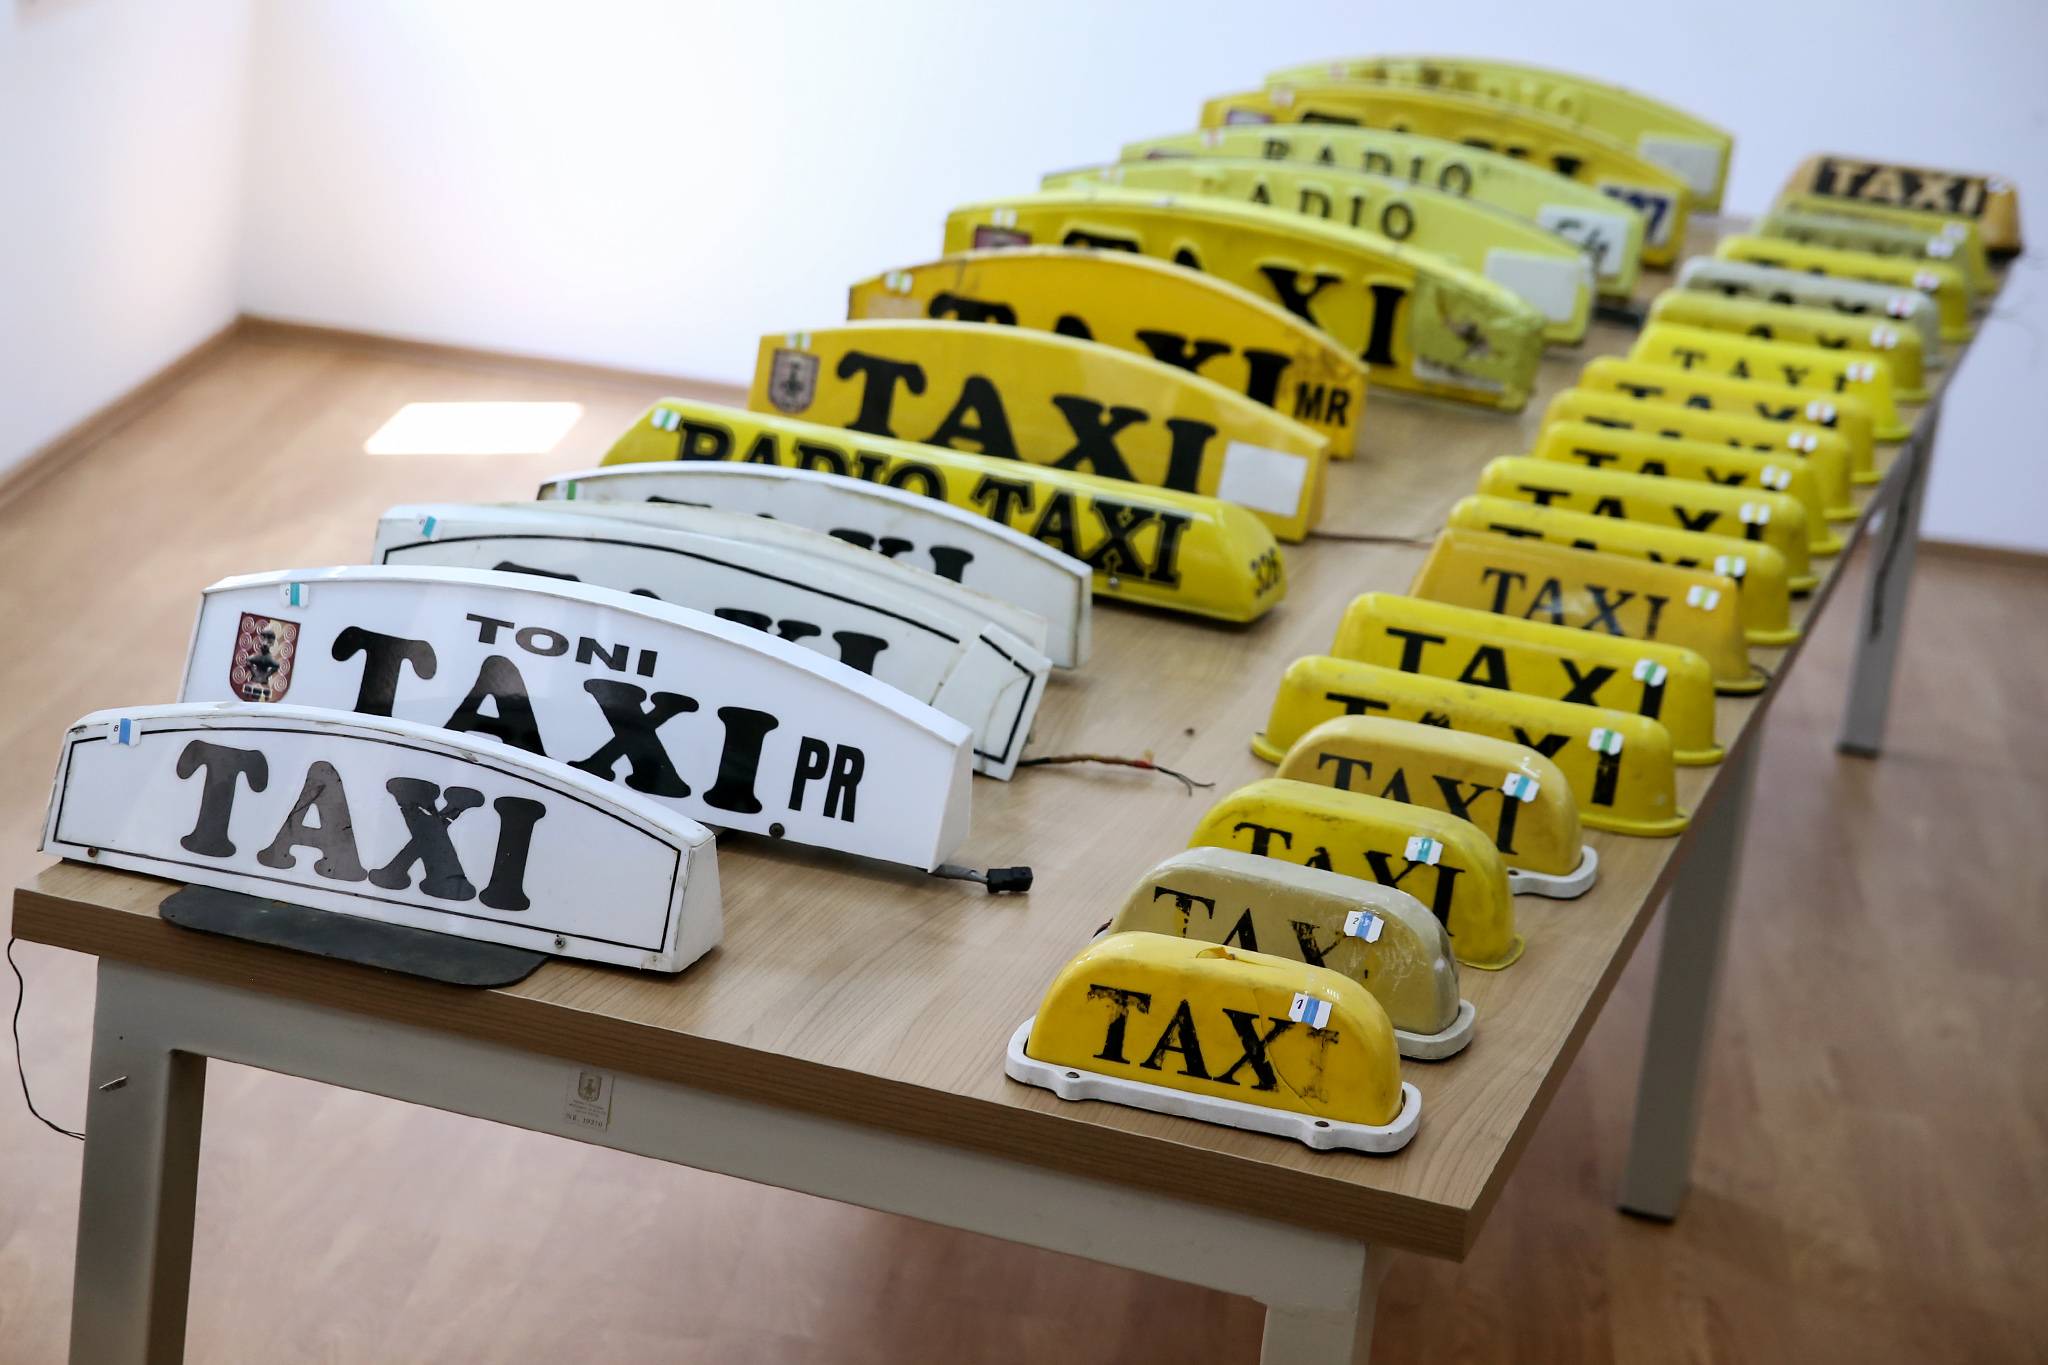 Komuna e Prishtinës nisin me gjoba dhe kofiskime për taksistët ilegalë